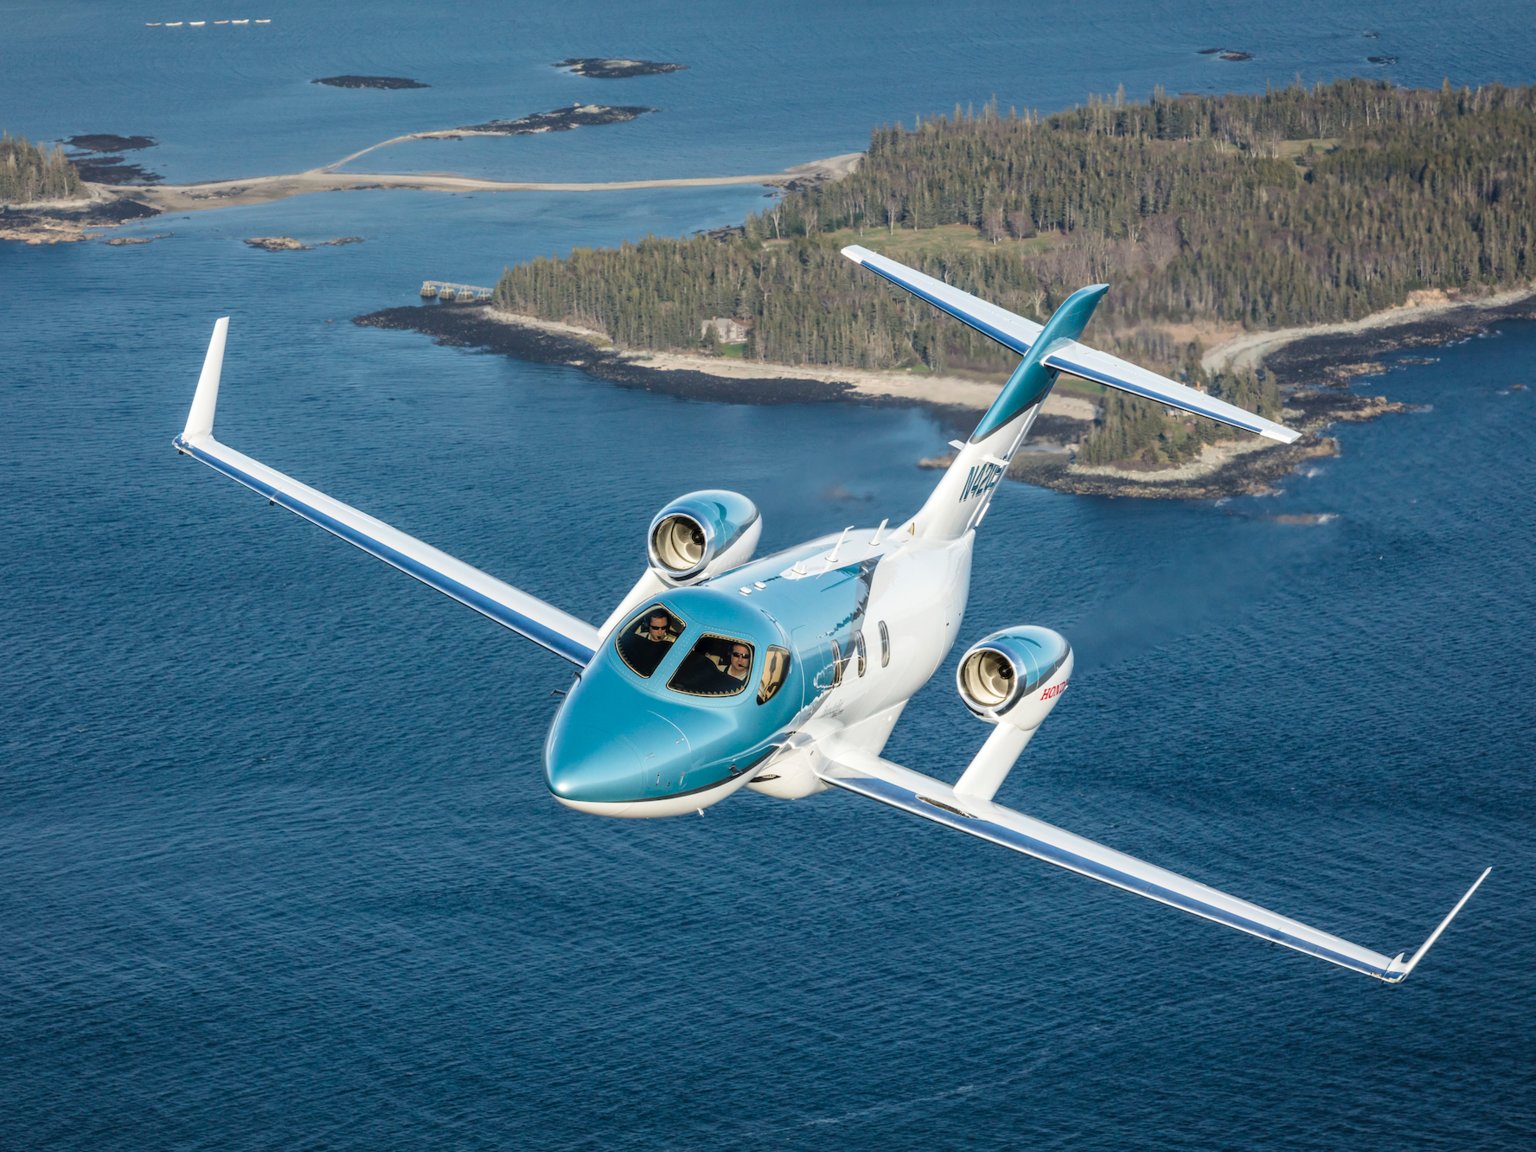 “بالصور” جولة مع طائرة هوندا إيليت الخاصة التي سعرها 19.6 مليون ريال